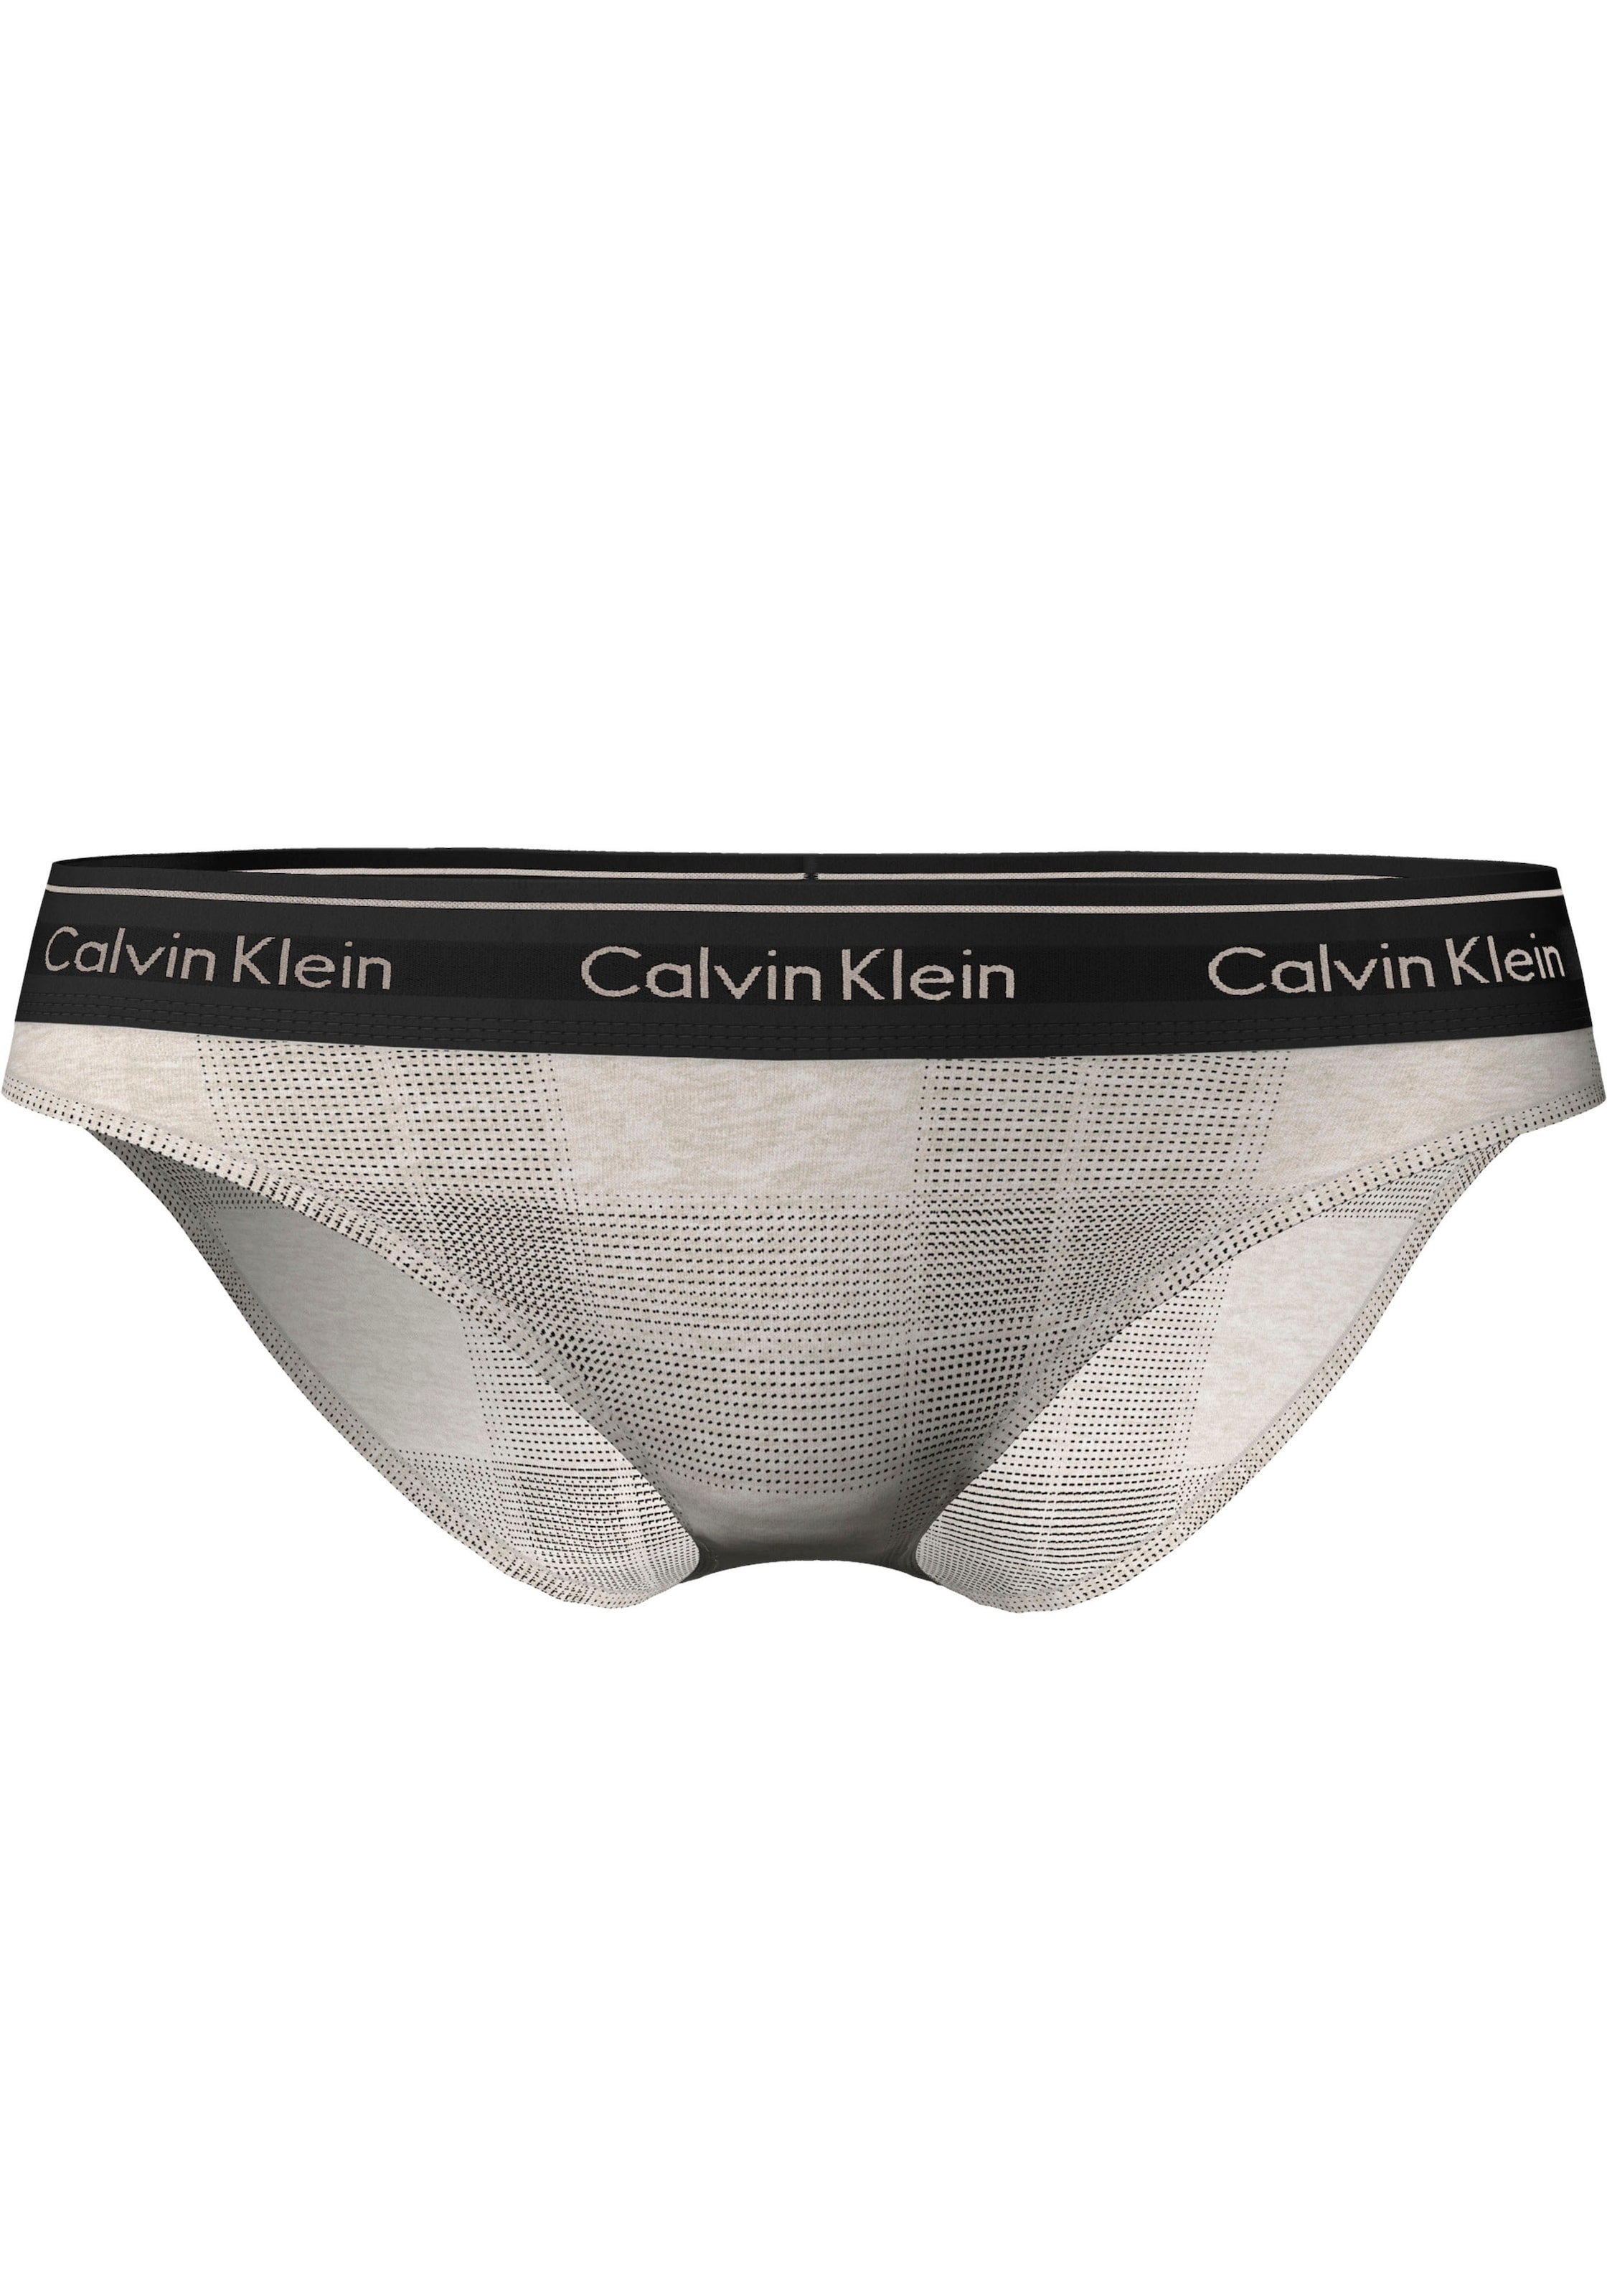 ♕ Calvin Klein im modischen Bikinislip, Karo-Look versandkostenfrei bestellen